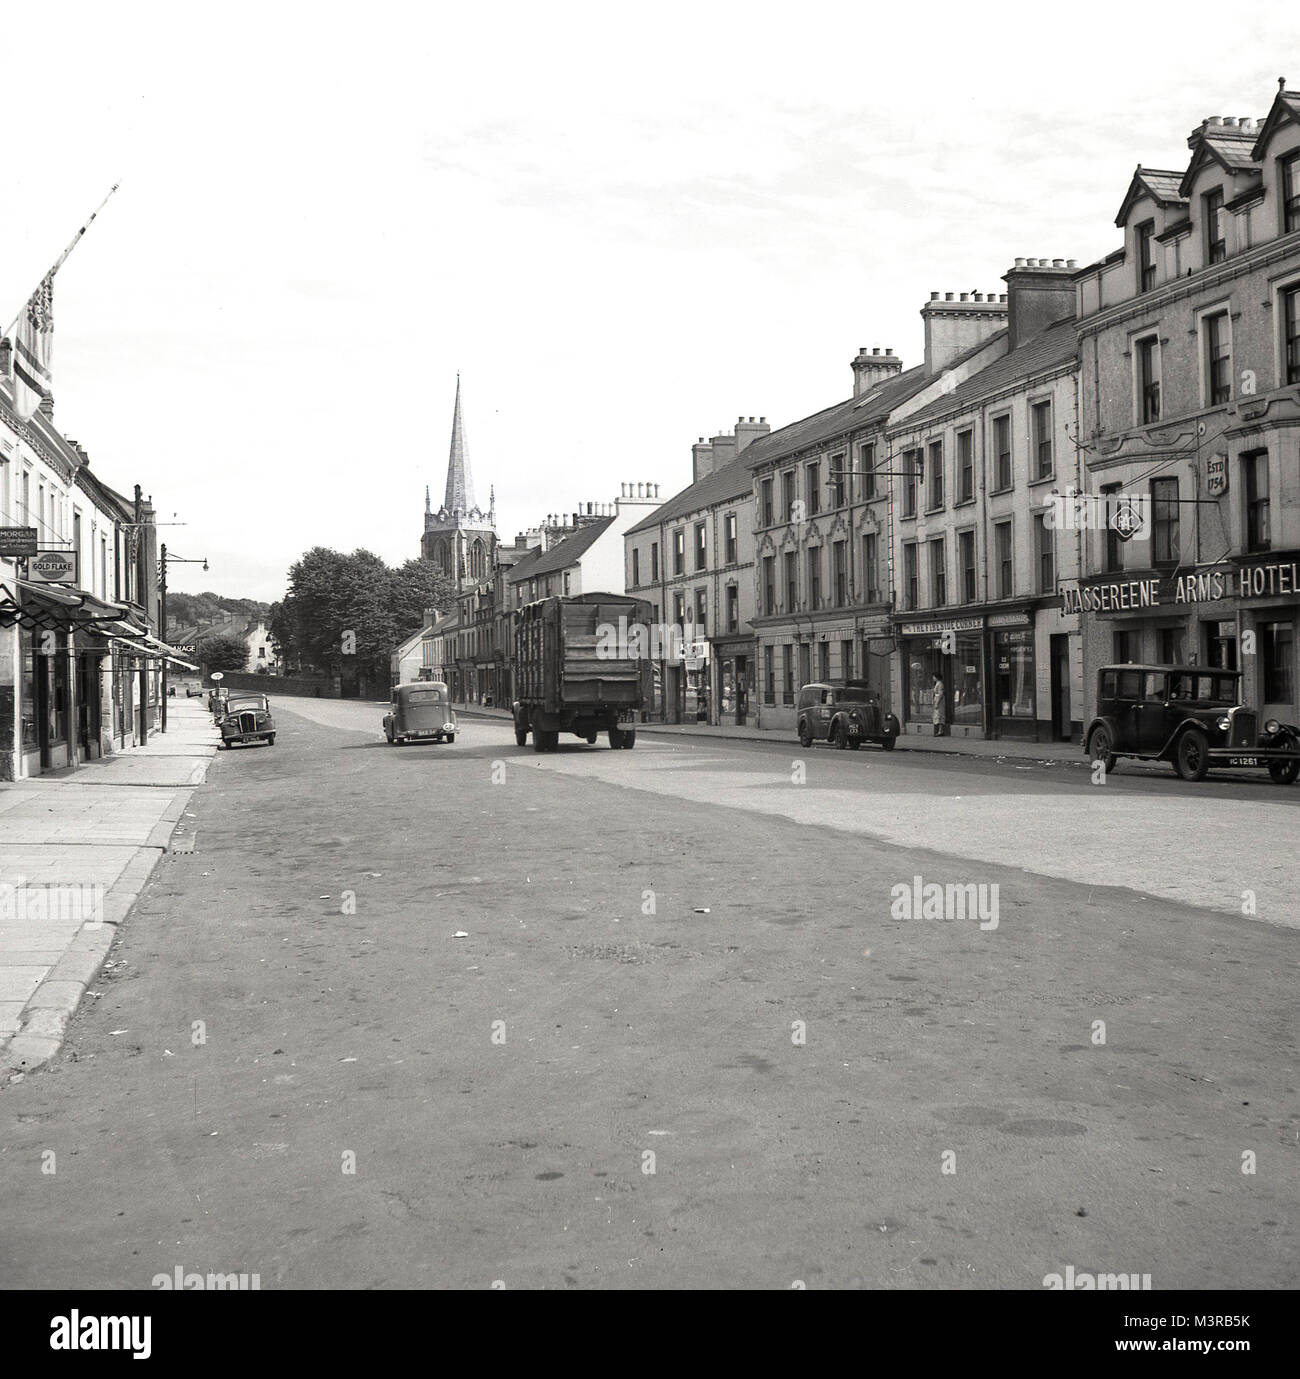 Années 1950, tableau historique d'Antrim High Street, l'Irlande du Nord, montrant les bâtiments, magasins, l'Massereene Arms Hotel et les véhicules de cette époque. L'hôtel, vu sur la droite, a été construit en 1754. Banque D'Images